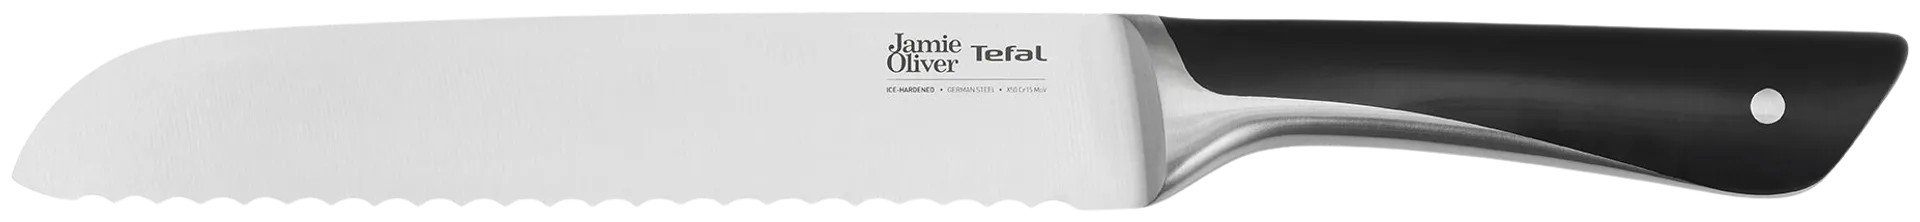 Tefal Jamie Oliver veitsisetti 5 osaa (kokkiveitsi 20 cm, Santoku-veitsi 16,5 cm, leipäveitsi 20 cm, yleisveitsi 12 cm, juures-/vihannesveitsi 9 cm ja veitsitukki) - 6